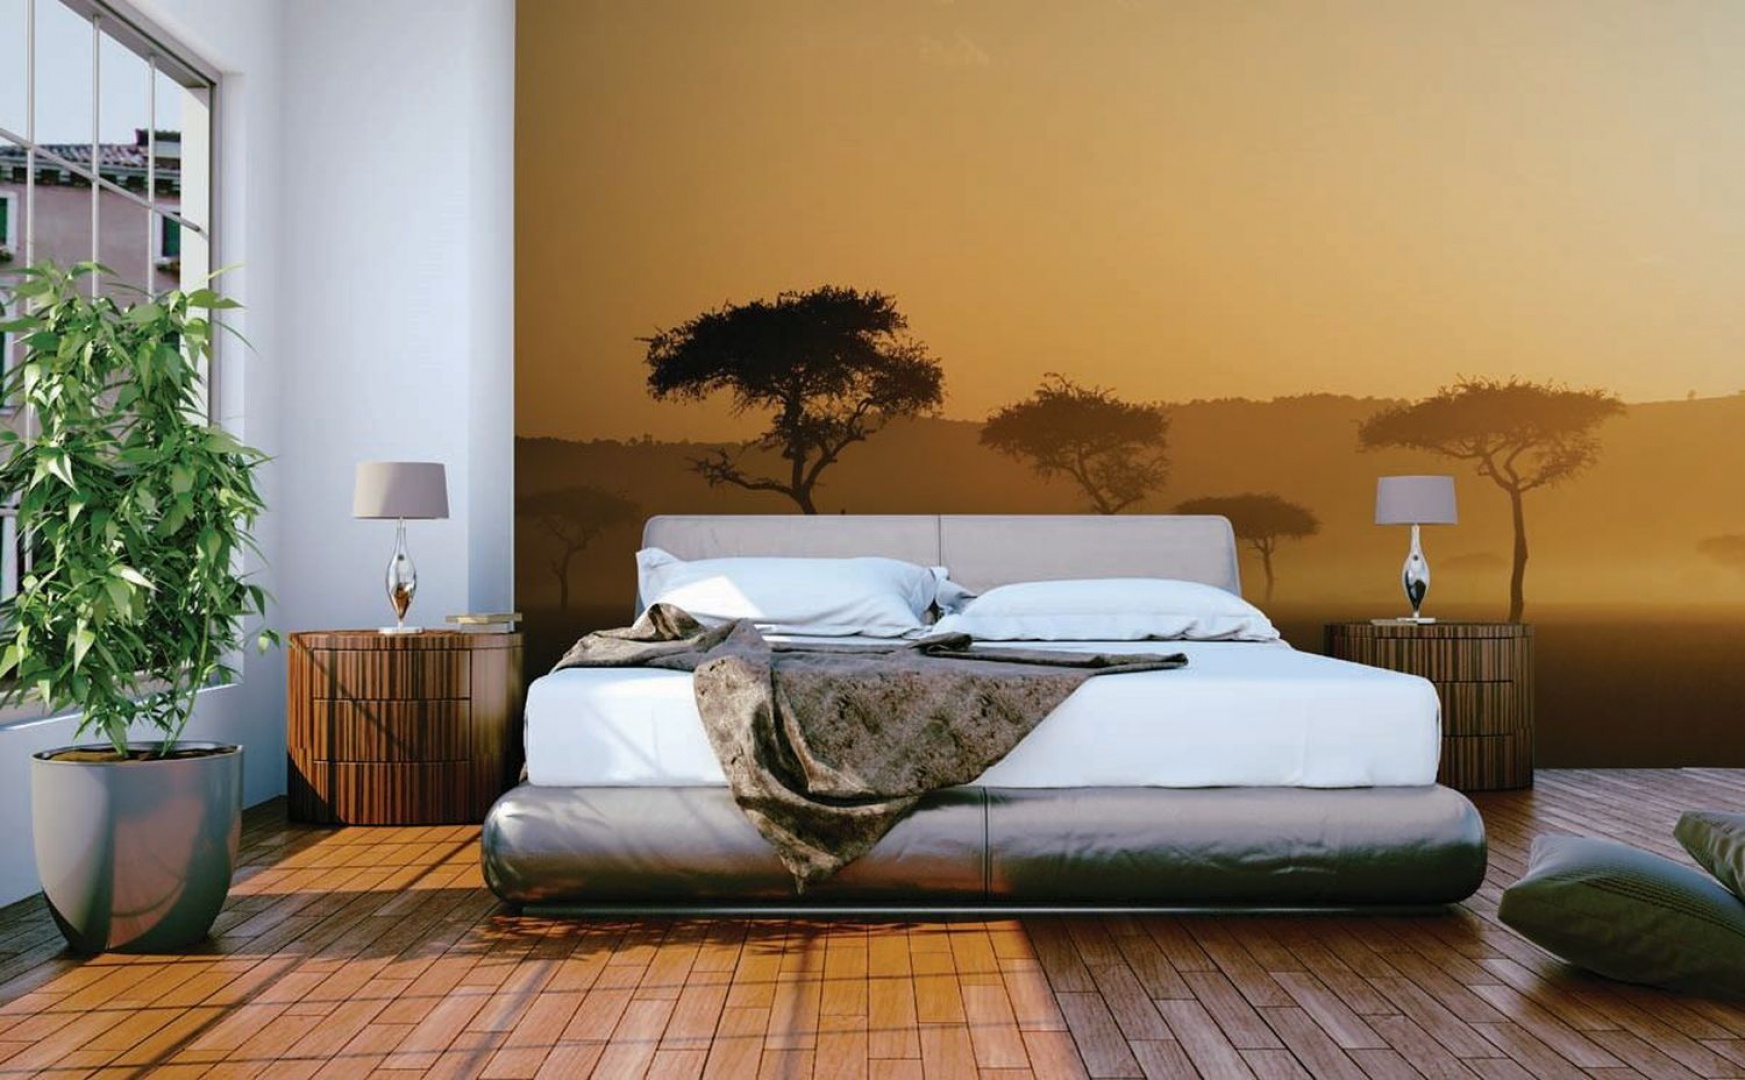 Afrykański krajobraz wkracza do przestrzeni sypialni urządzonej w kolorach ziemi za sprawą fototapety na ścianie za łóżkiem. Fot. Dekornik